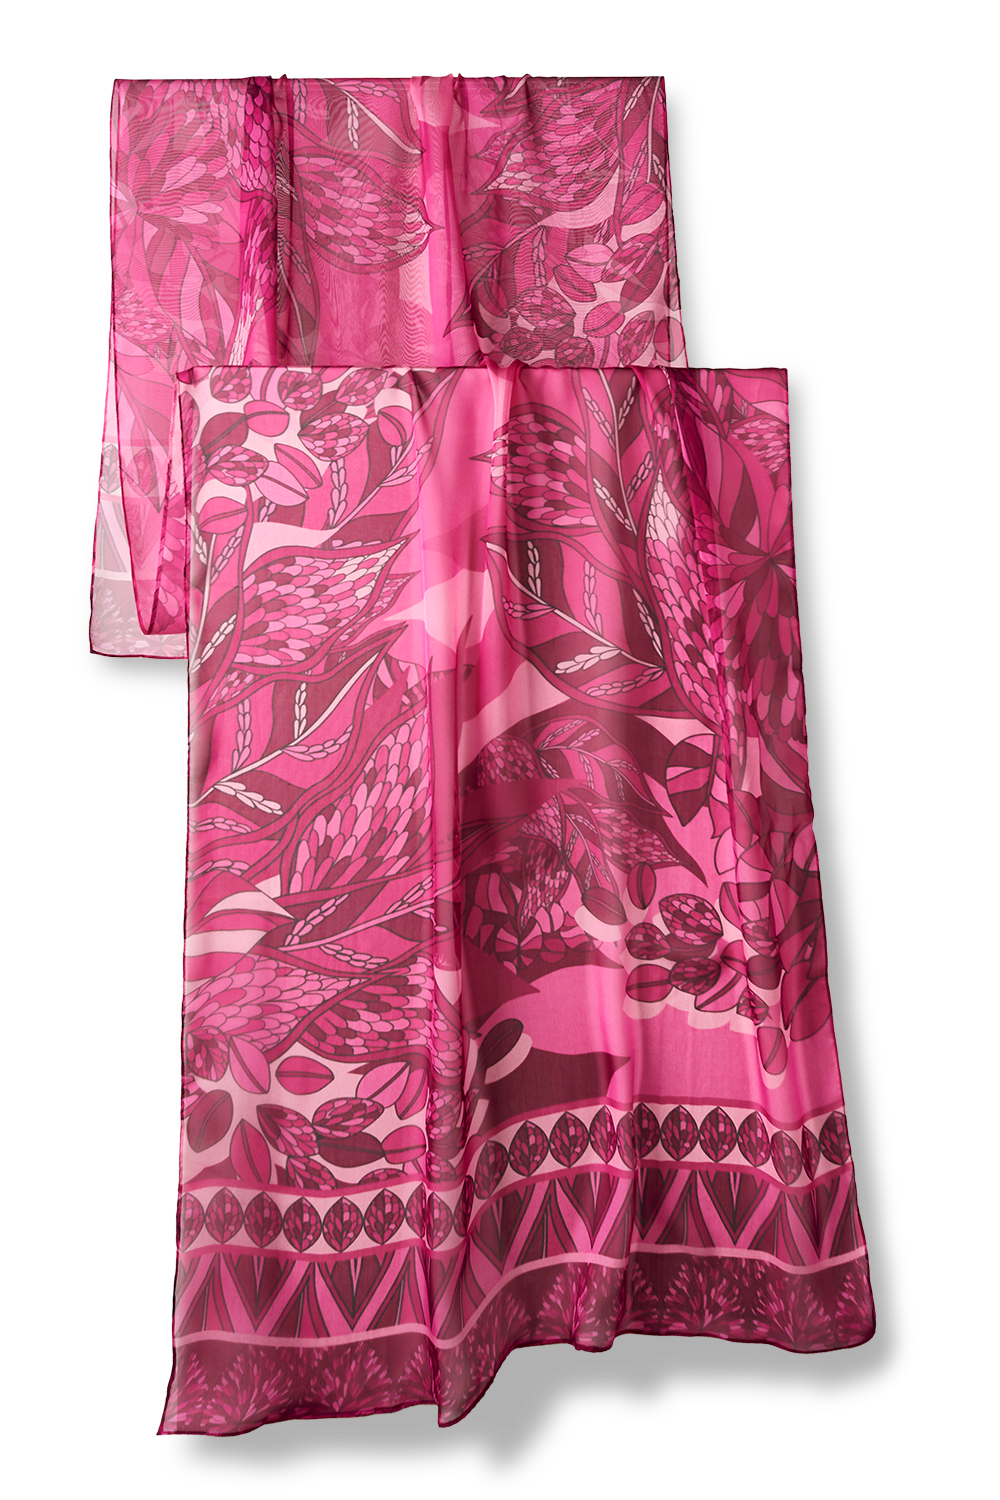 Echarpe Ramos de Púrpura pink em mousseline de seda | 60x210cm